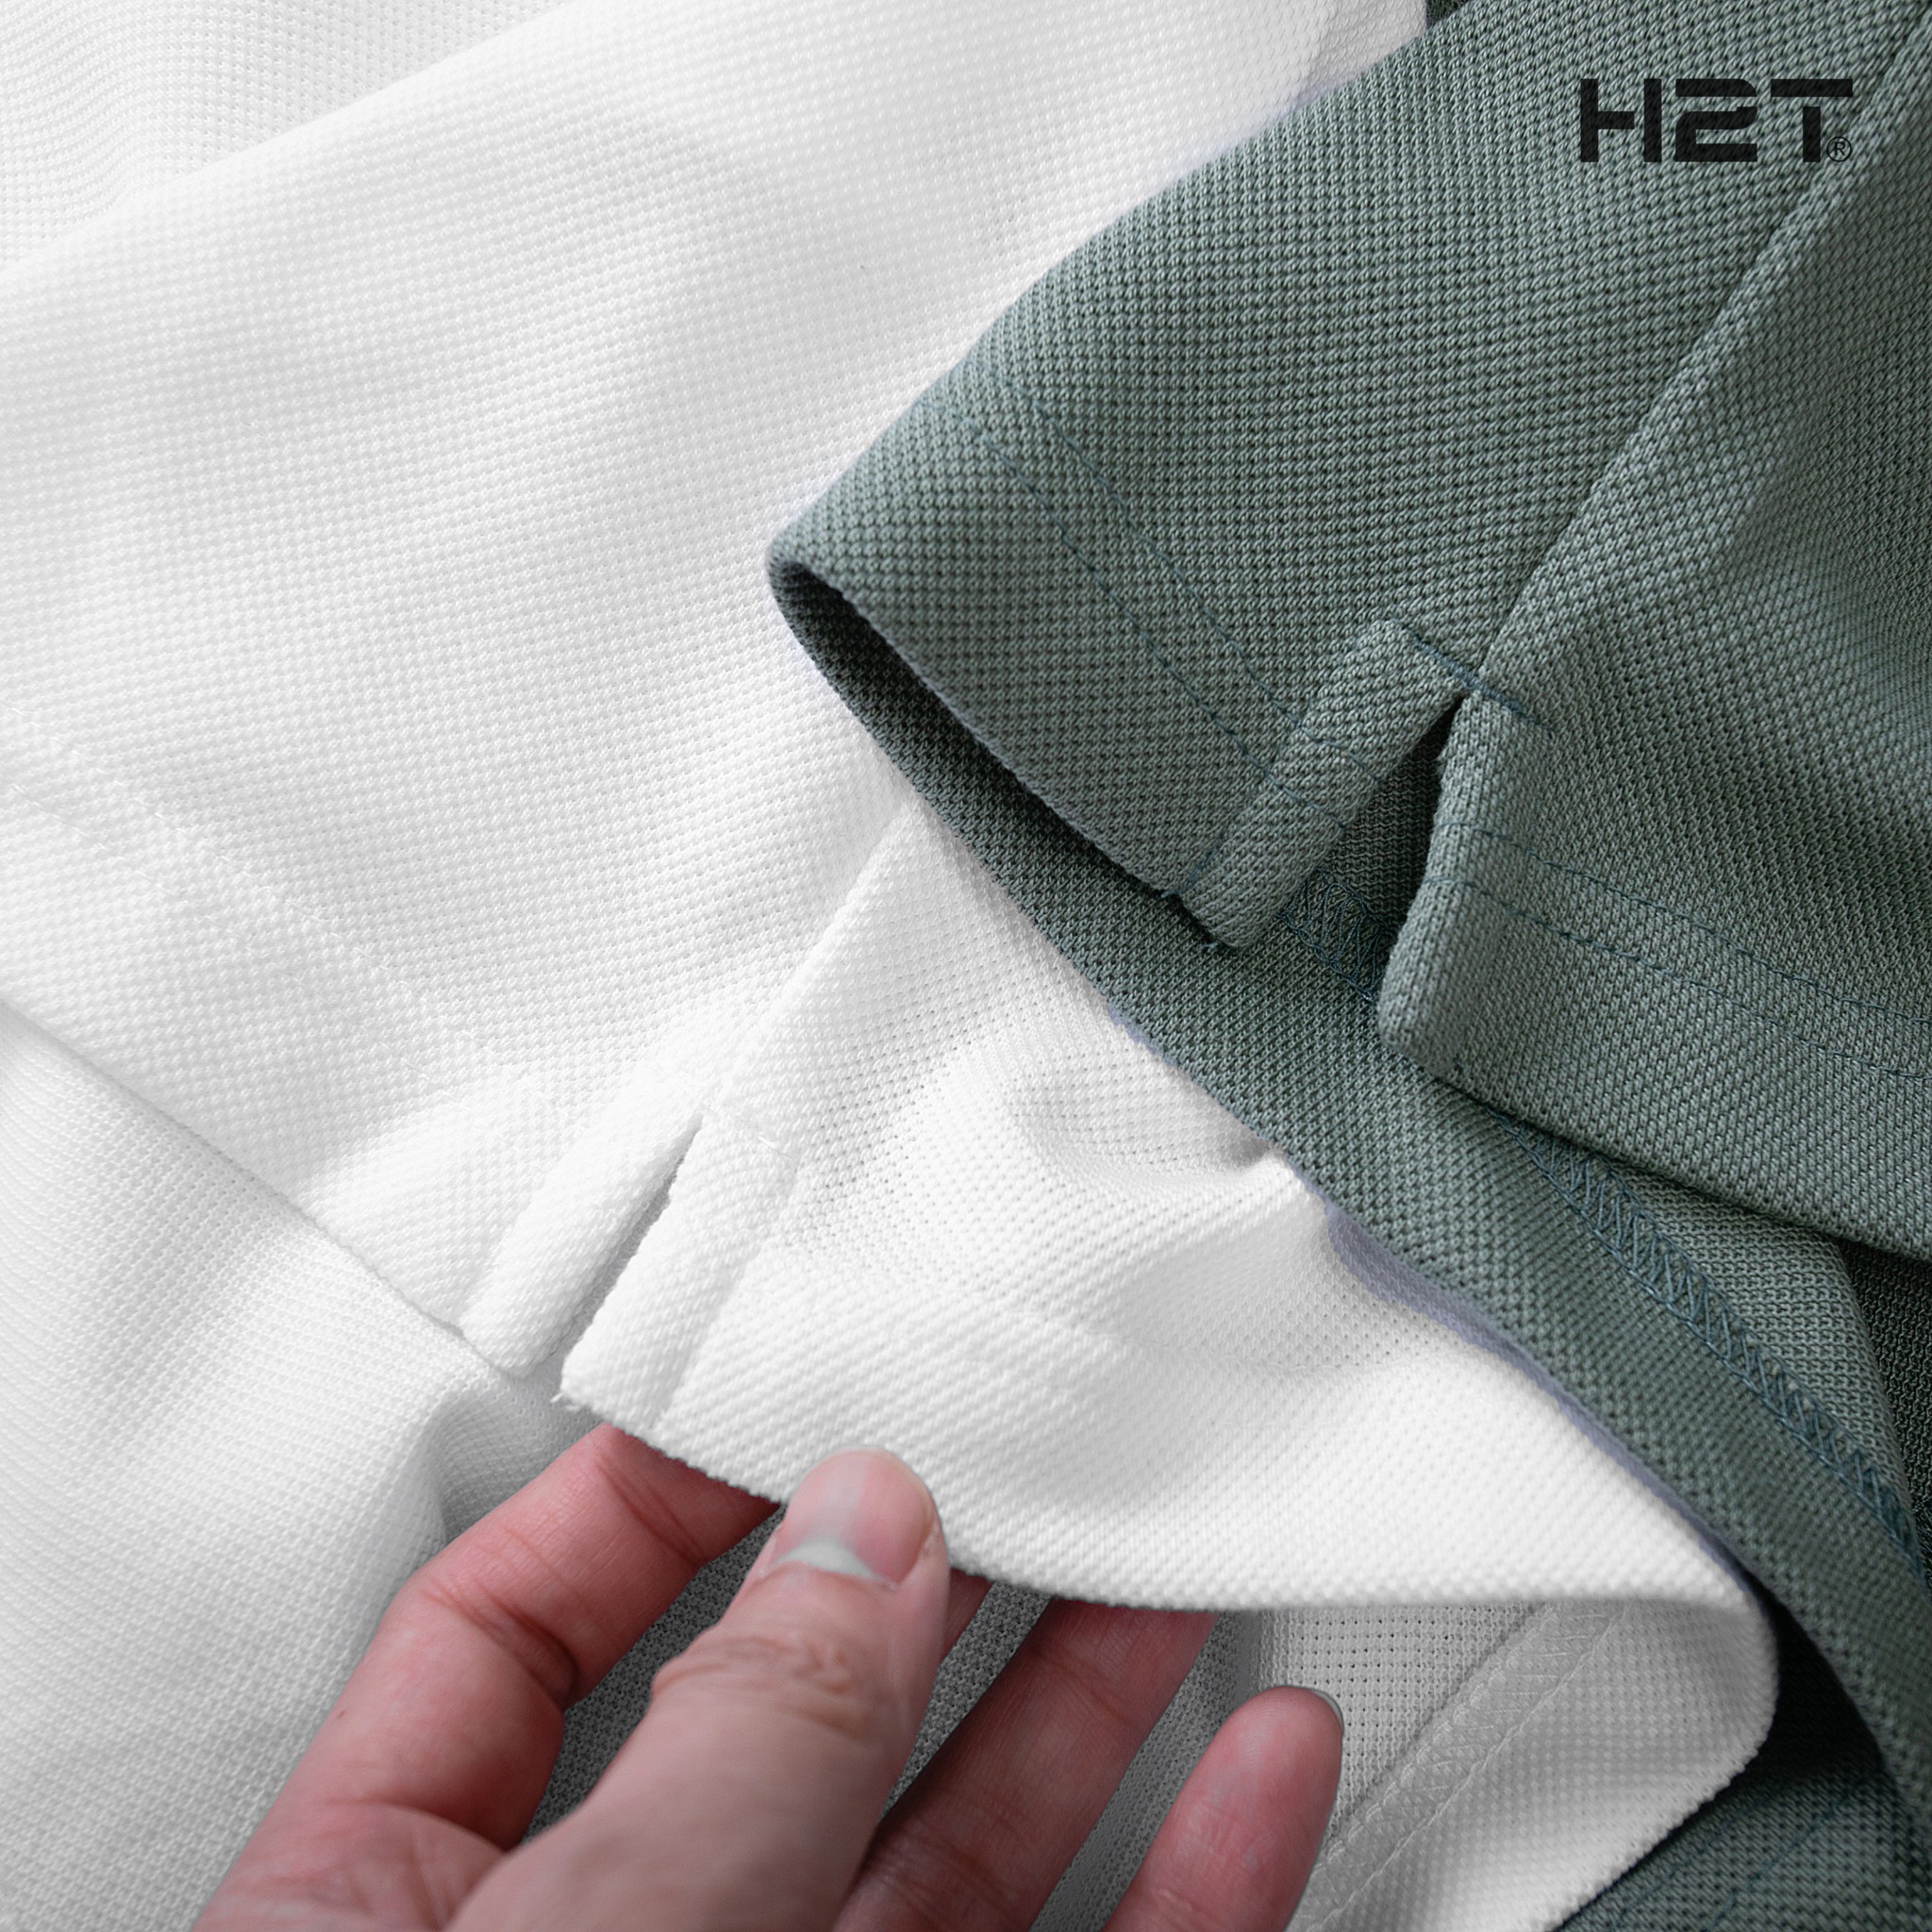 Top 10 shop quần áo nam được lựa chọn nhiều nhất ở Hà Nội -  H2T